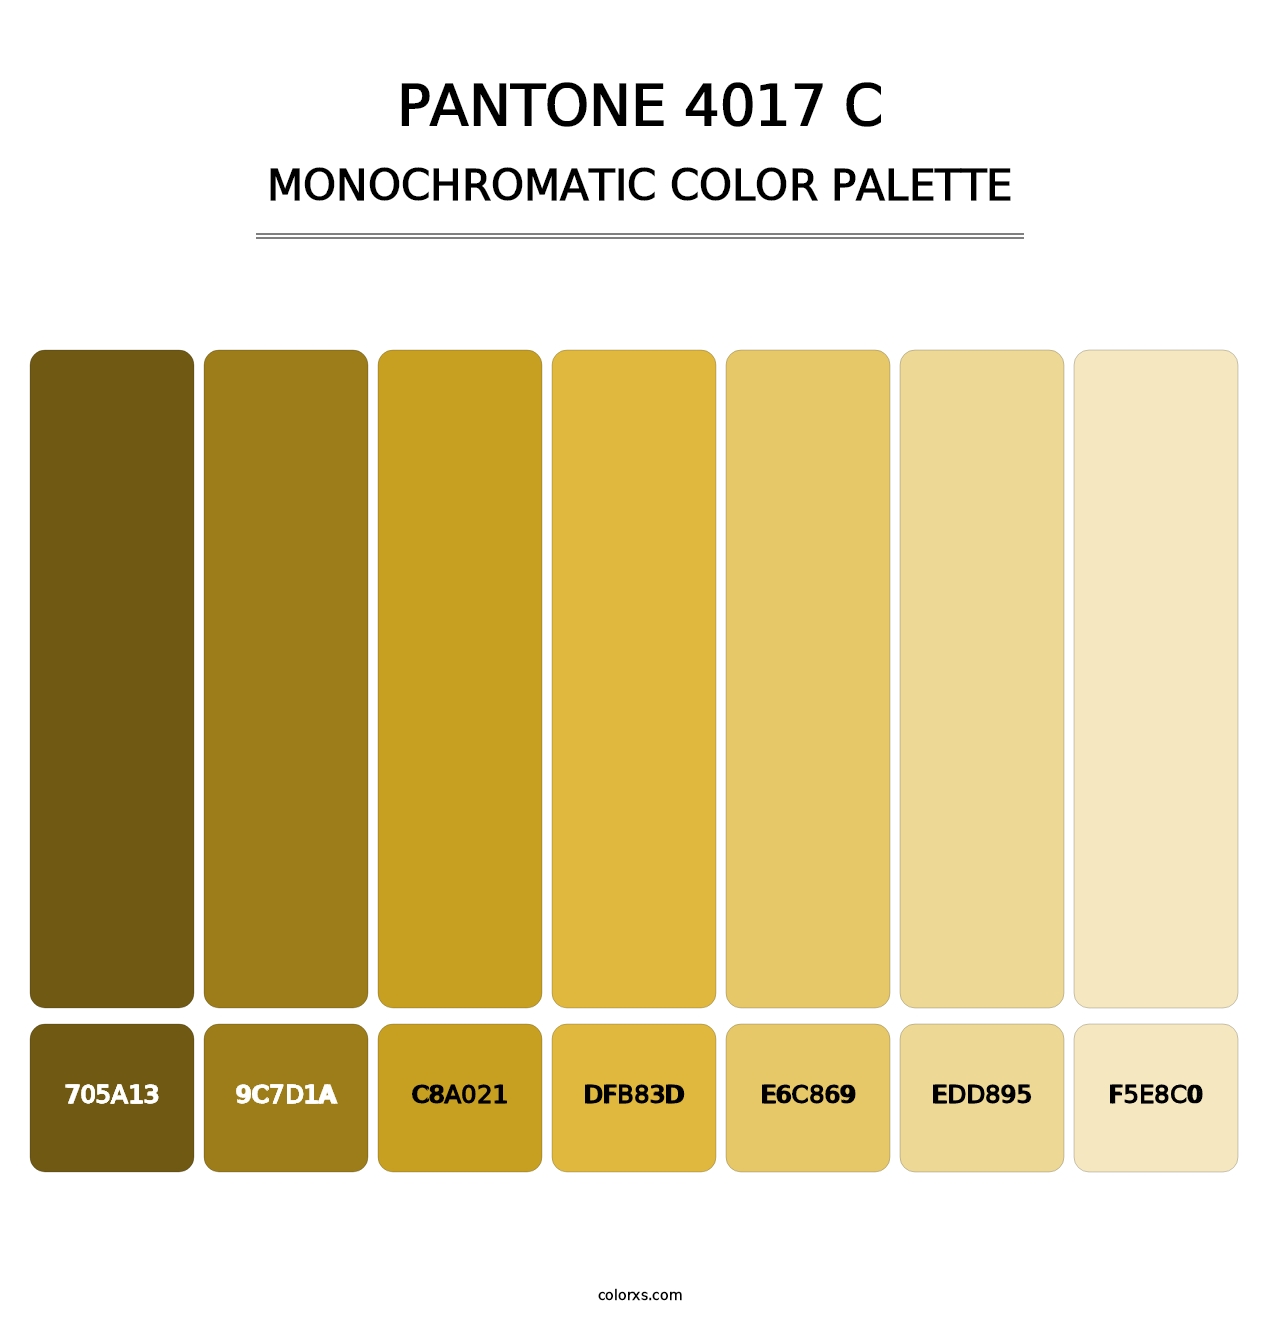 PANTONE 4017 C - Monochromatic Color Palette